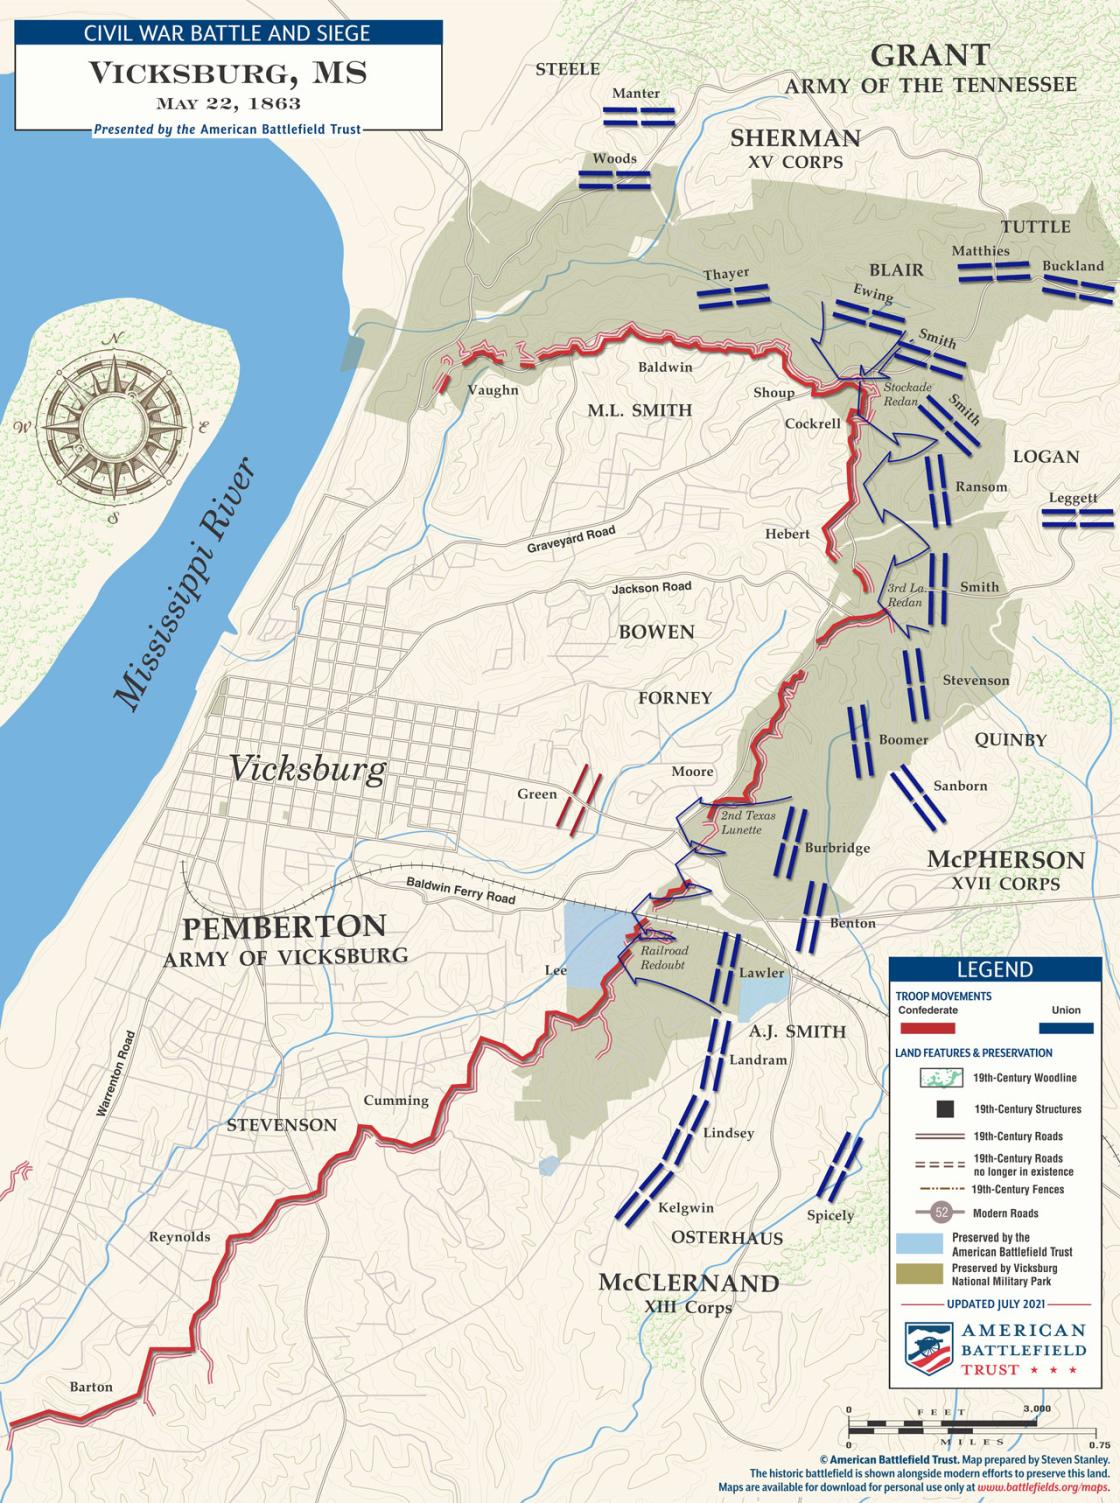 Vicksburg | May 22, 1863 Battle Map